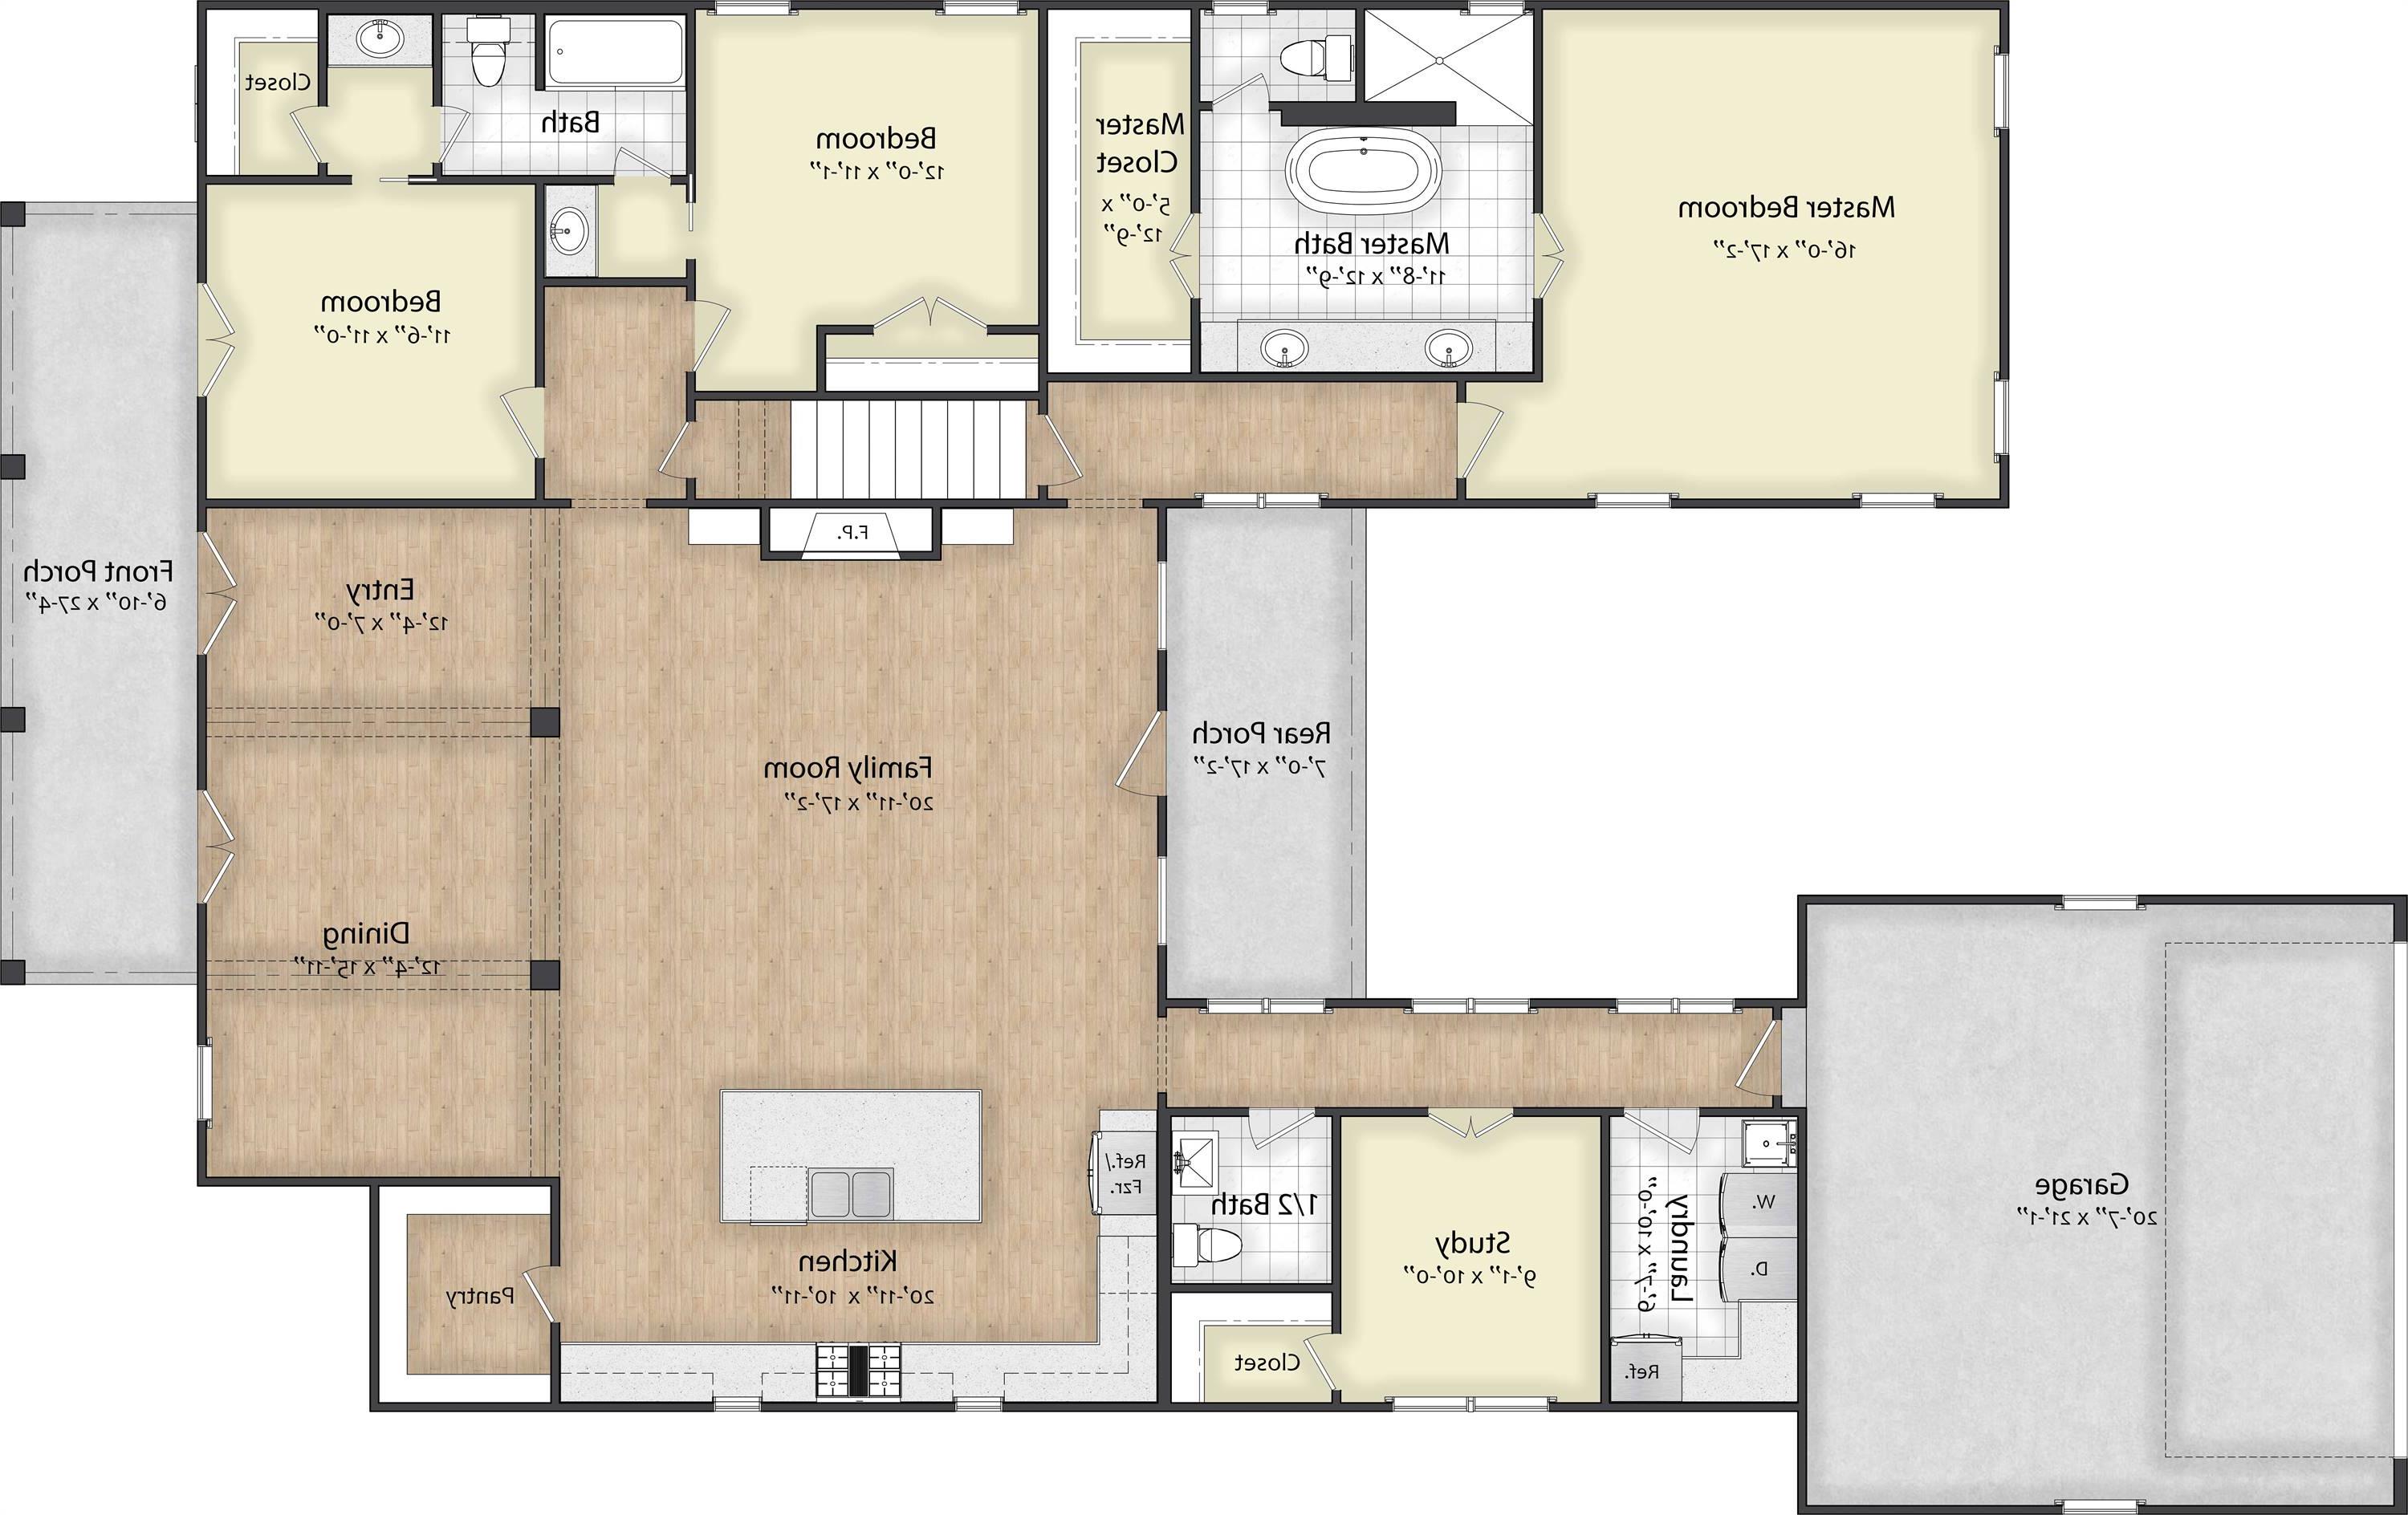 1st Floor image of Scarlett Lane House Plan